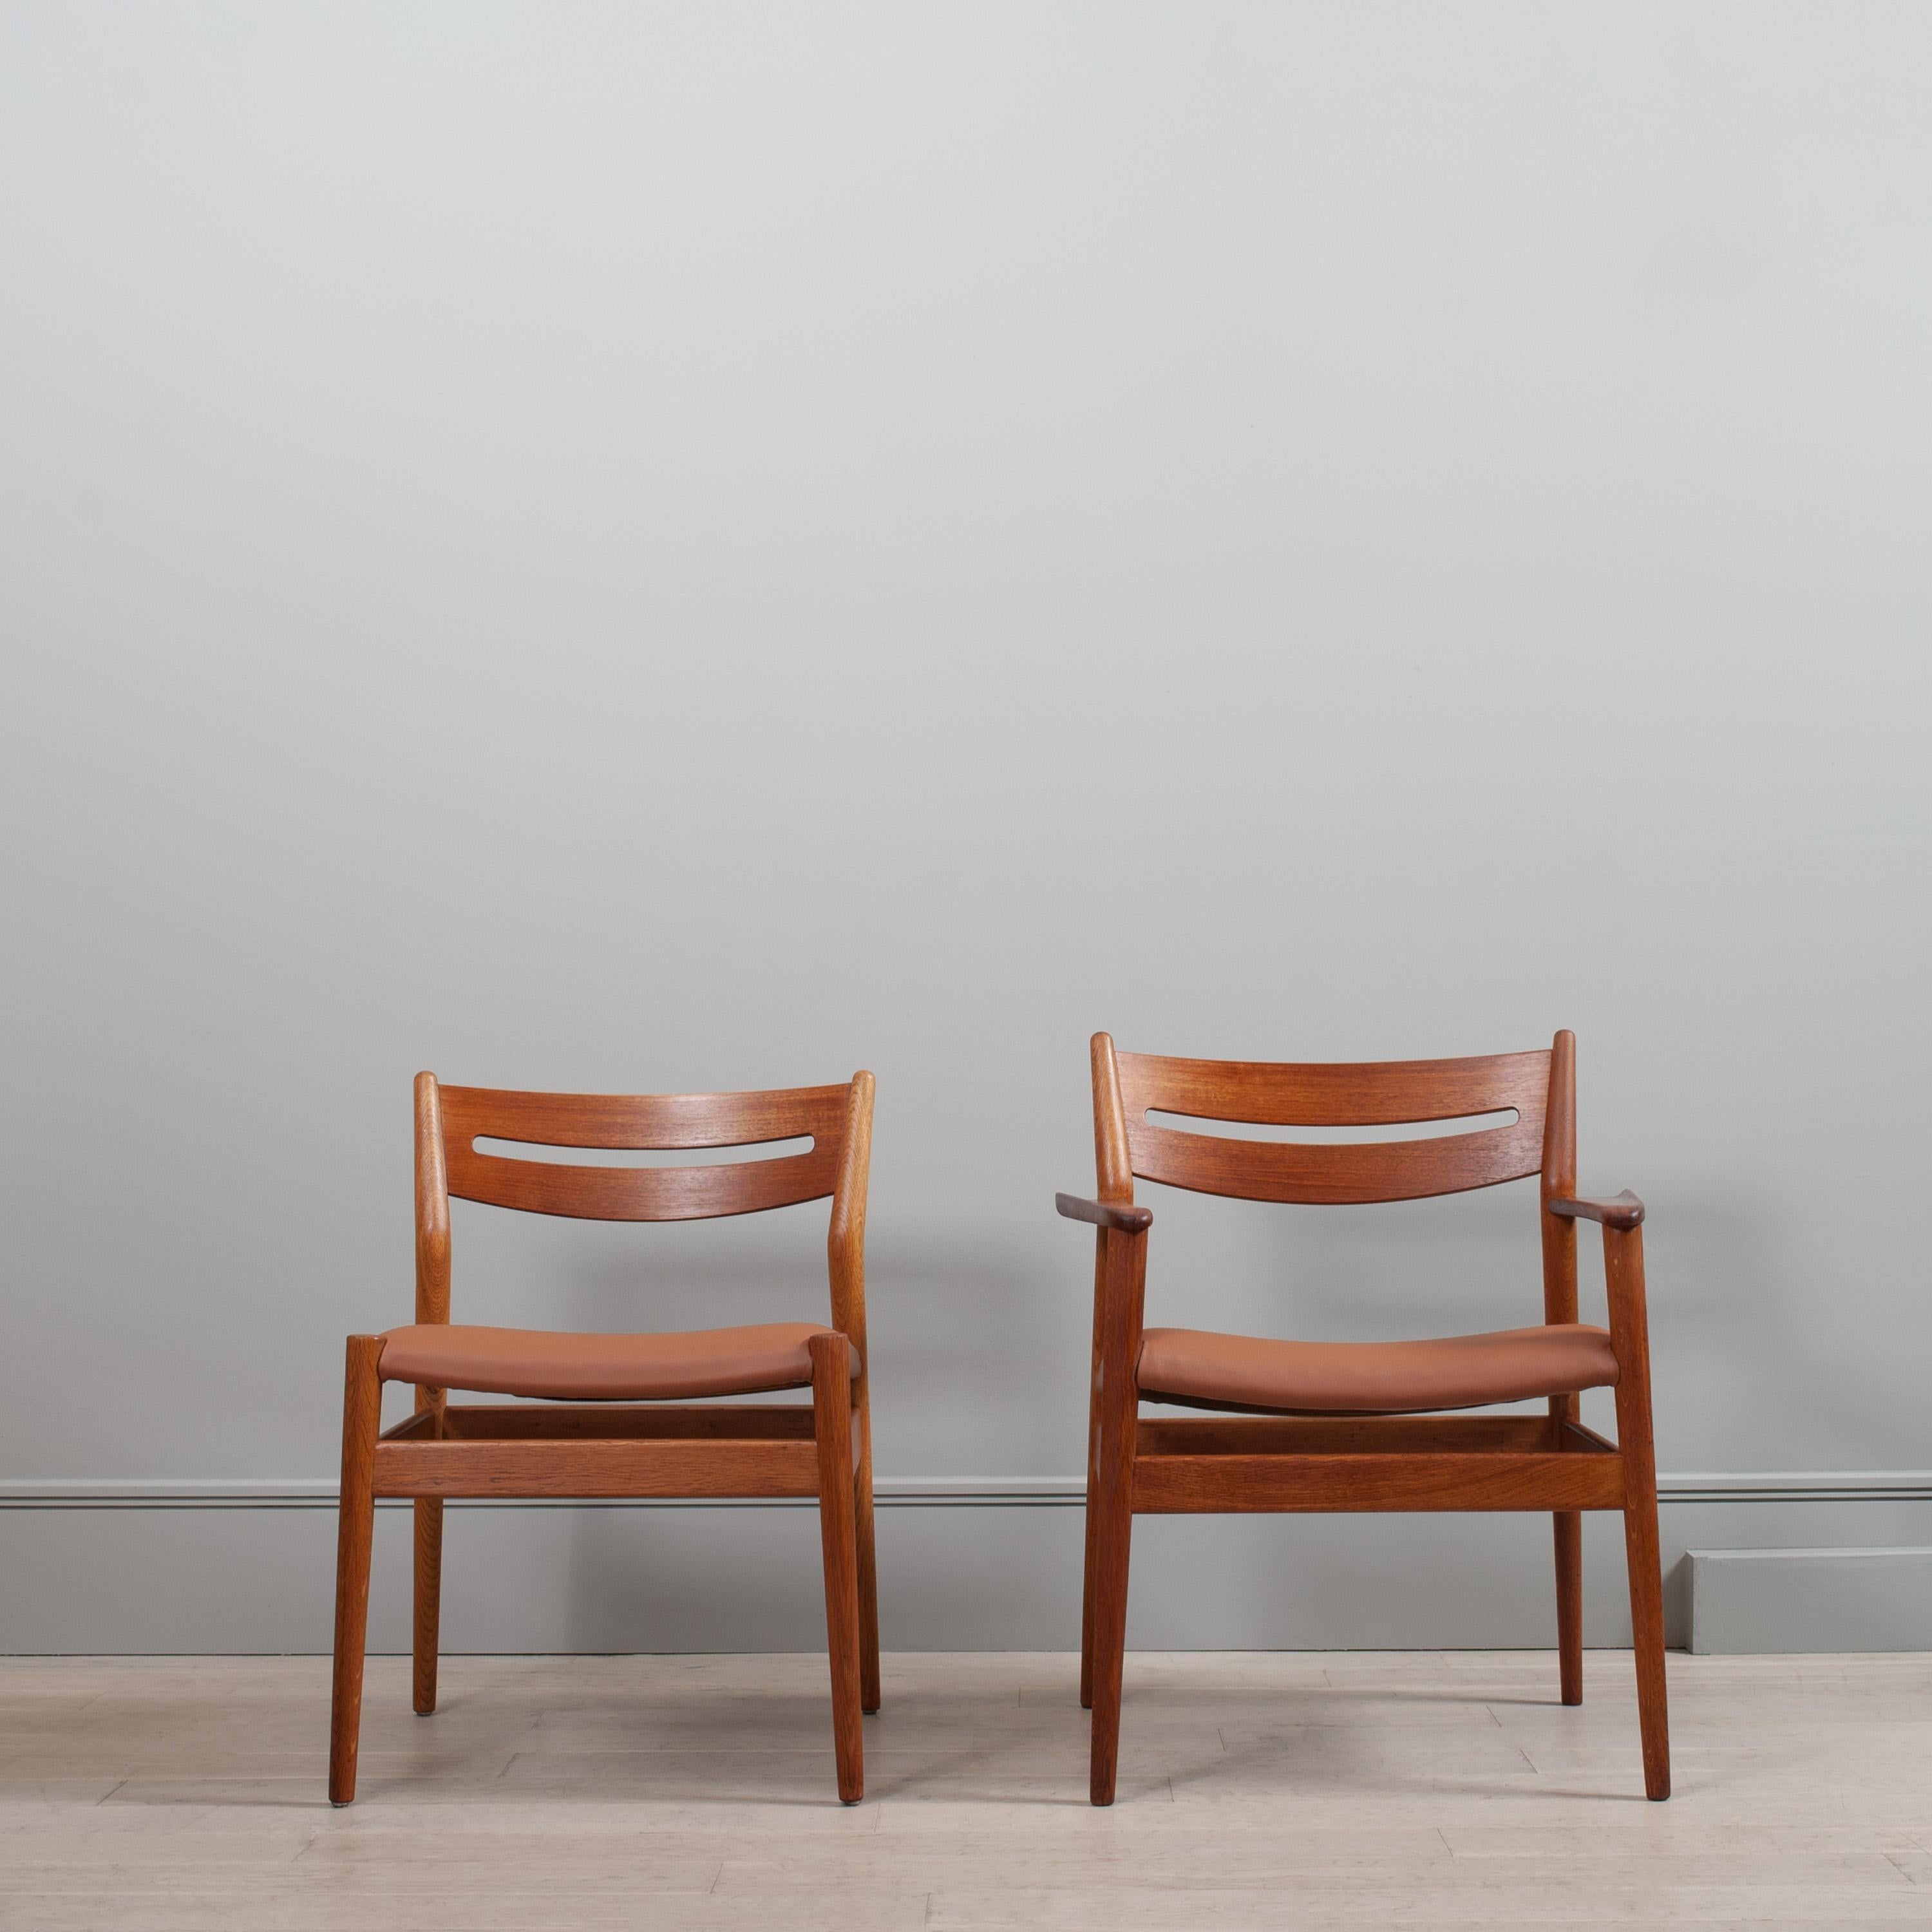 Ein unglaublich seltener Satz von 8 Esszimmerstühlen von Grete Jalk. 
Das Modell 32-42 wurde 1962 von Grete Jalk entworfen und vom Edelmöbelhersteller Sibast produziert. Dieses auffällige Stuhlset im skandinavischen Modernismus besteht aus 6